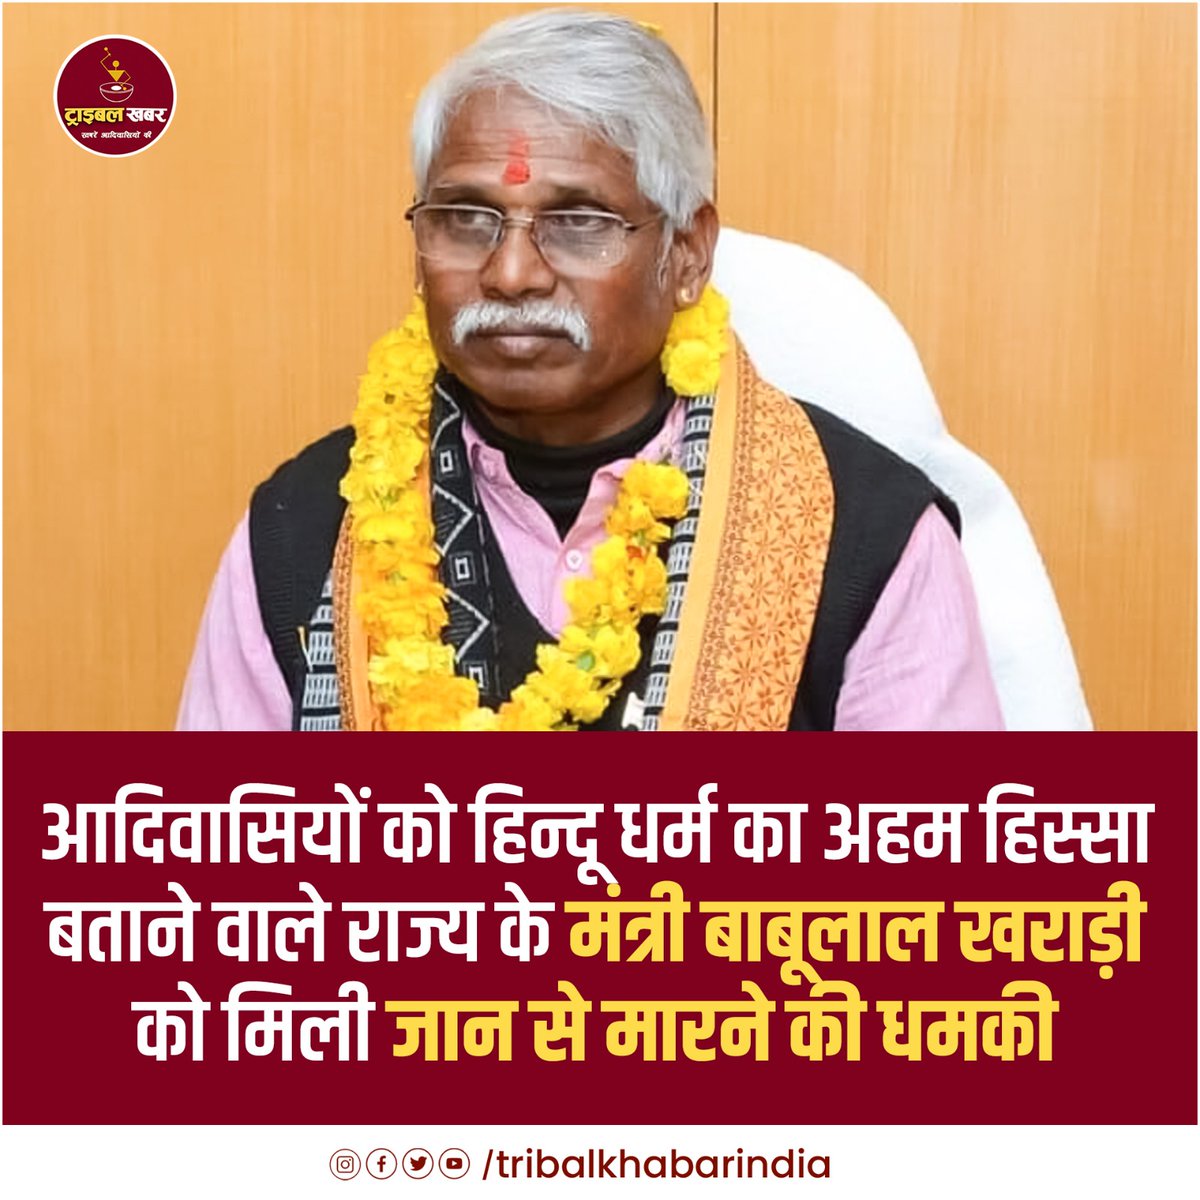 आदिवासियों को हिन्दू धर्म का अहम हिस्सा बताने वाले राज्य के मंत्री बाबूलाल खराड़ी को मिली जान से मारने की धमकी @babulalkharadi3 #tribal #Religious #Hindu #StateMinister #Threat